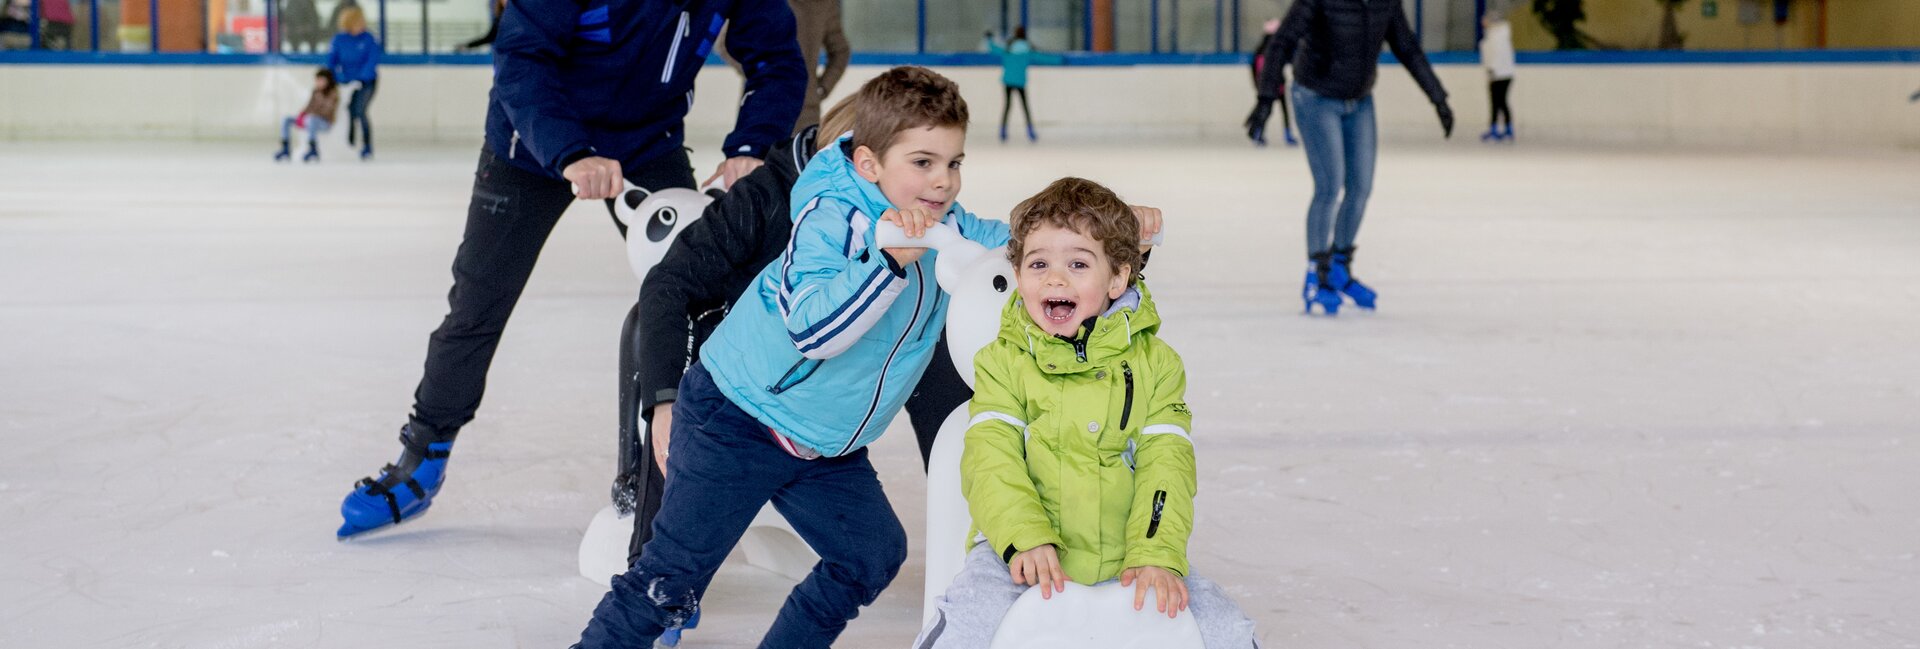 Andalo - new ice-skating rink